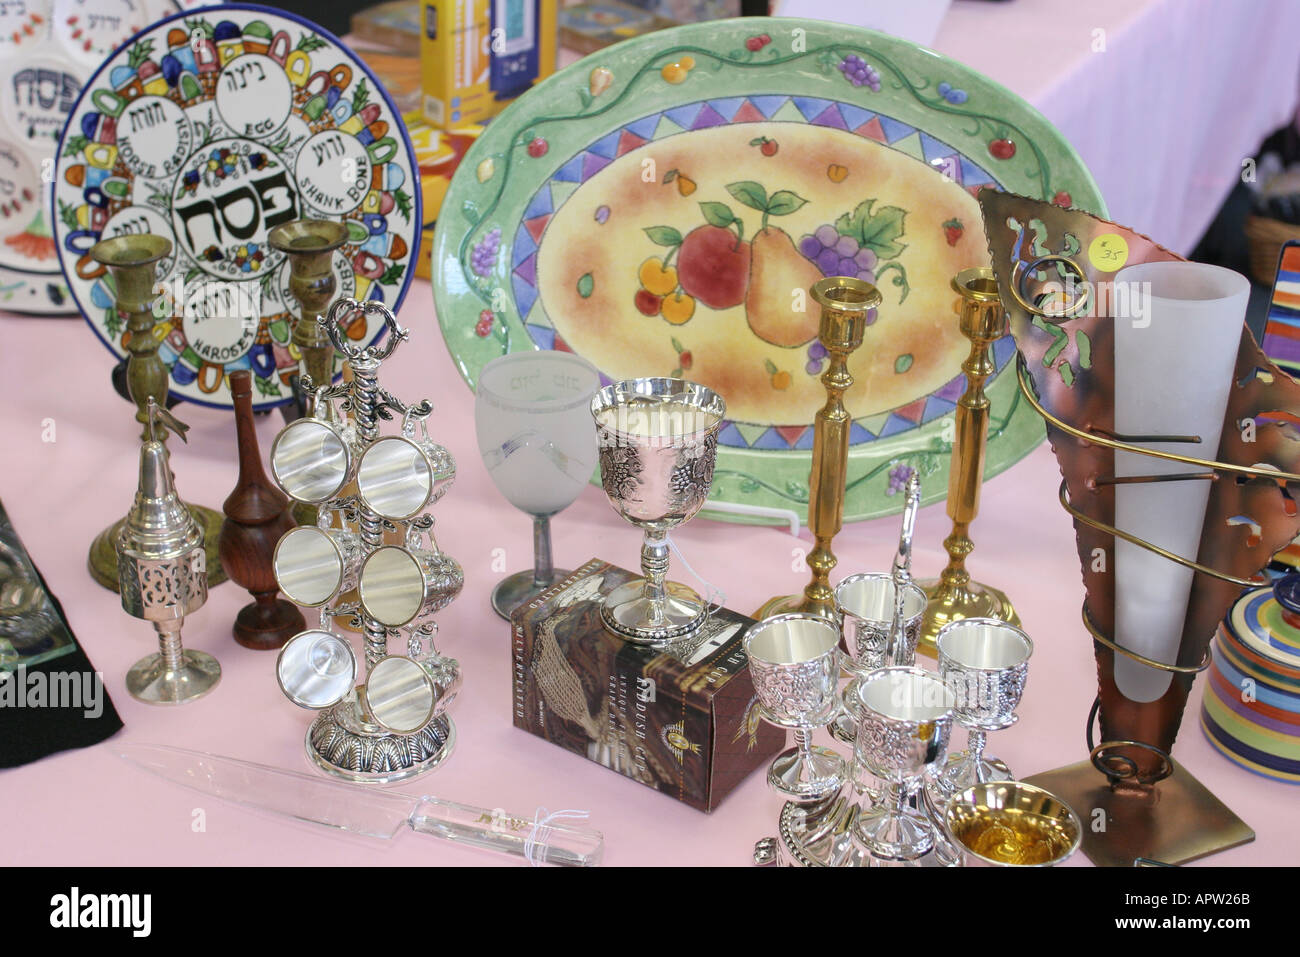 Miami Florida,Temple Israel,Découvrez Miami Day,synagogue boutique de cadeaux,consommateur,Judaica,plaques de la Pâque,hébreu,les visiteurs voyage visite touristique Banque D'Images